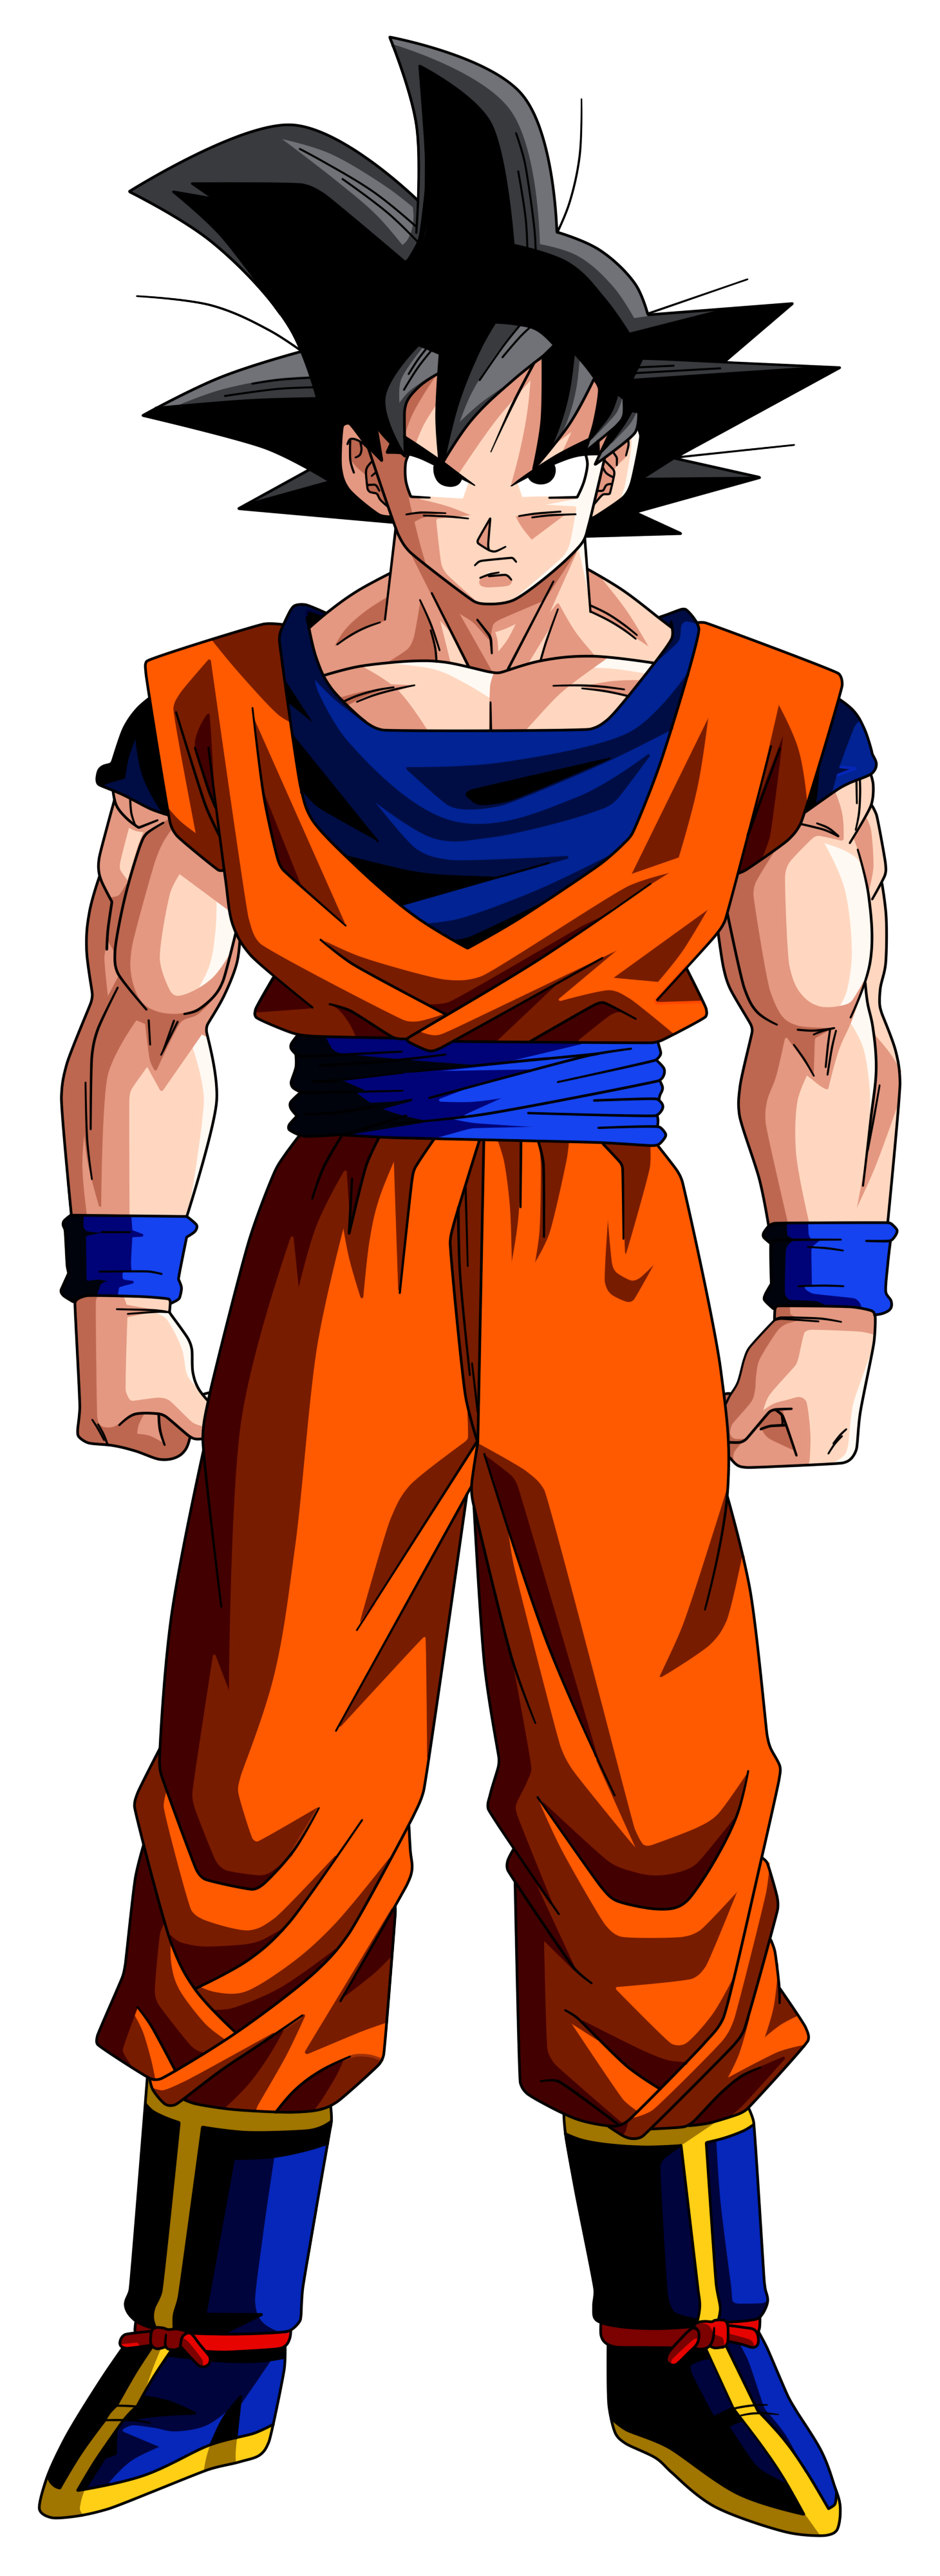 Son Goku Canon Dragon Ball Zpaleomario66 Character